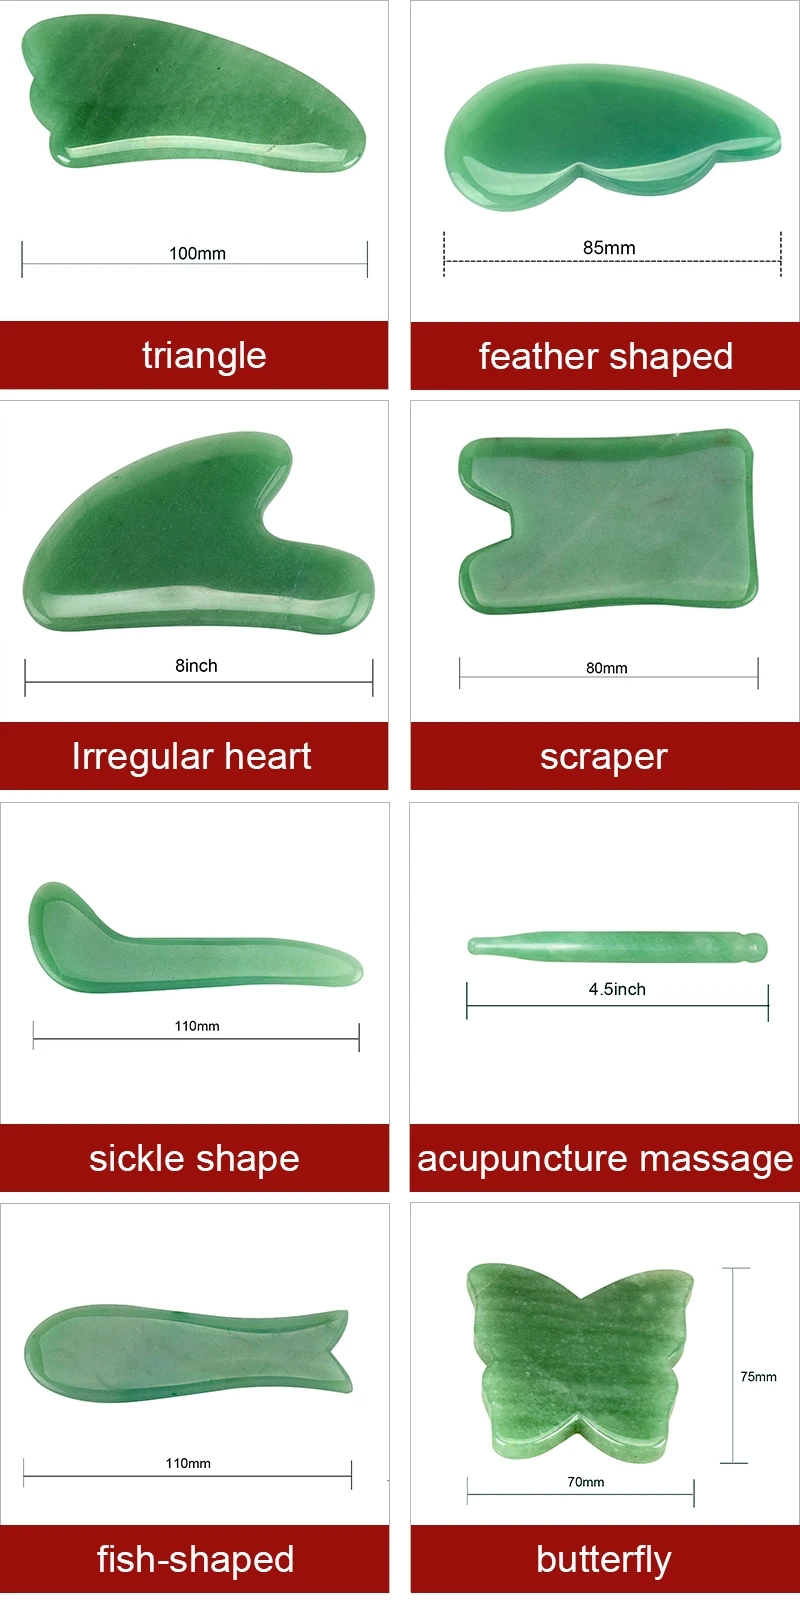 Натуральный камень гуаша скребок зеленый авантюрин массаж для кожи доска коврик шеи назад головы массажер для ног забота о здоровье